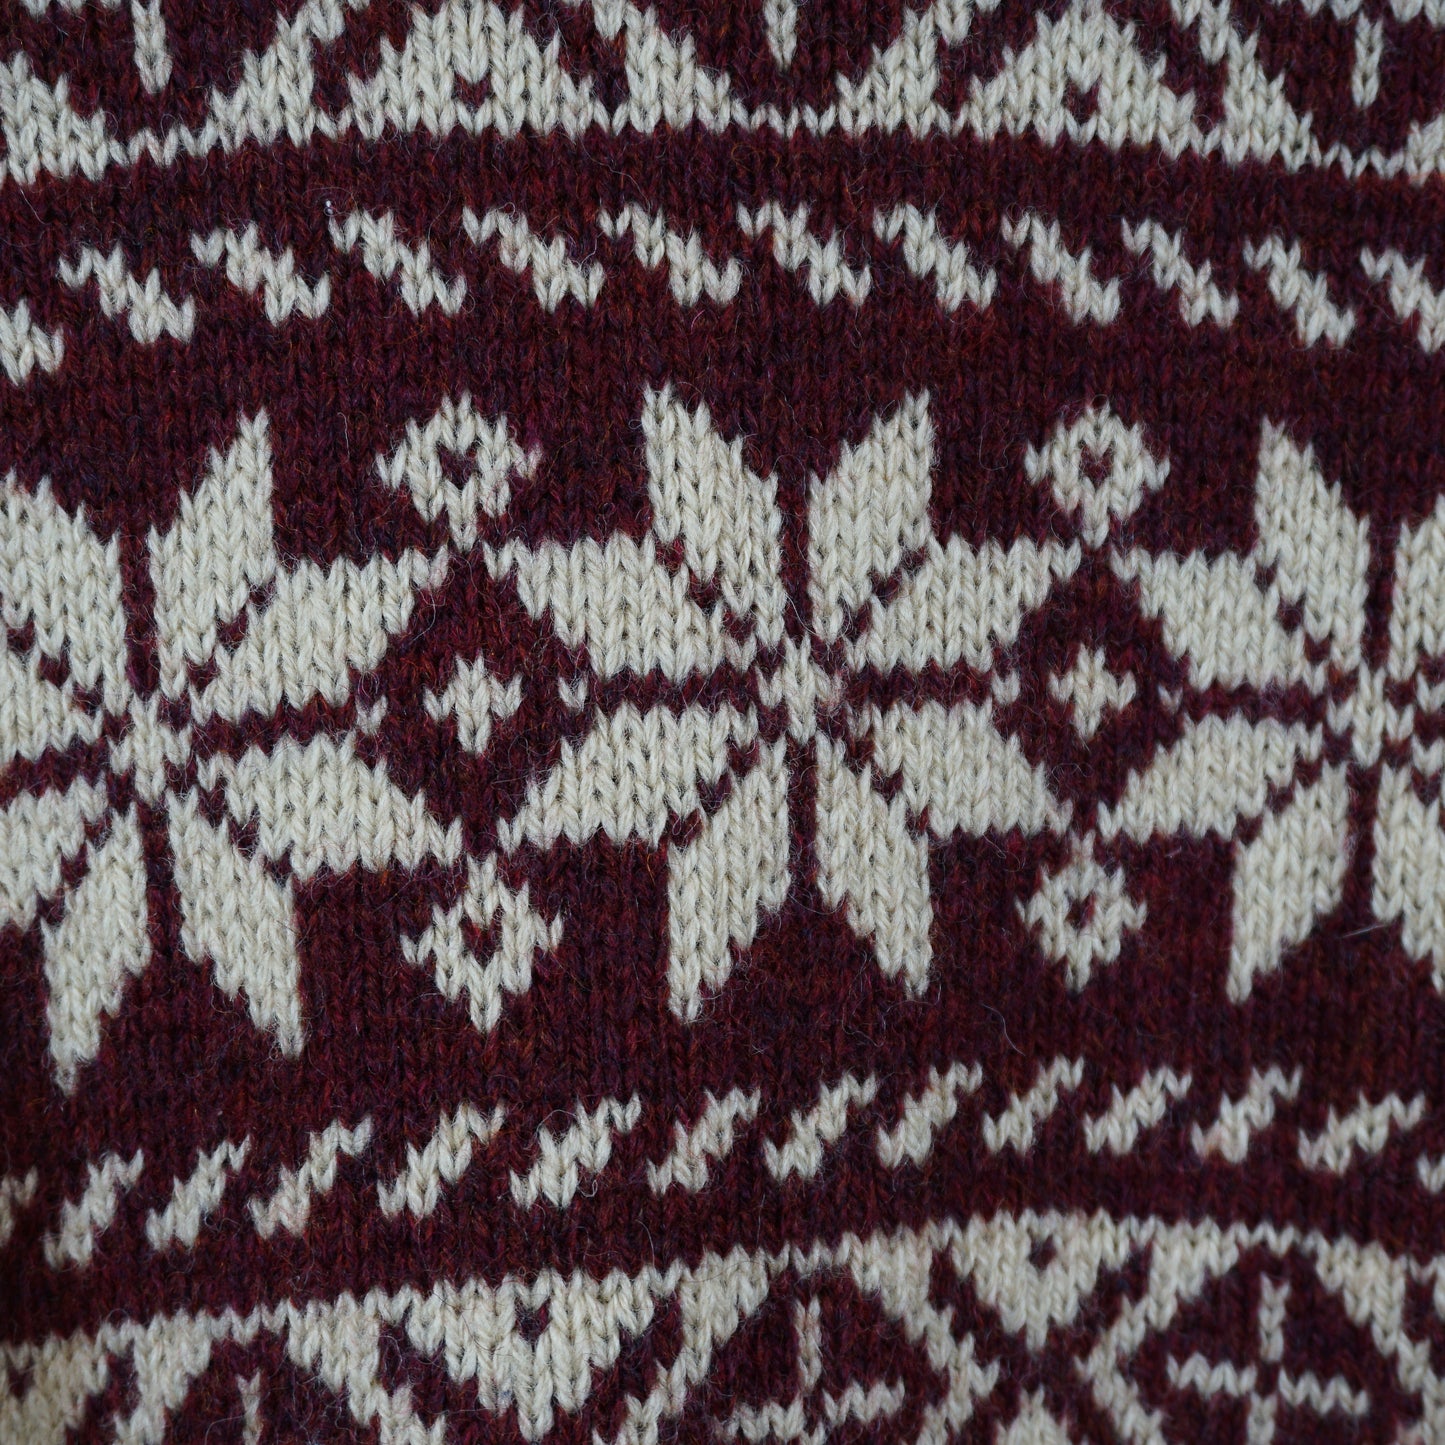 1980s L.L Bean Patterned Wool Knit Sweater (L)